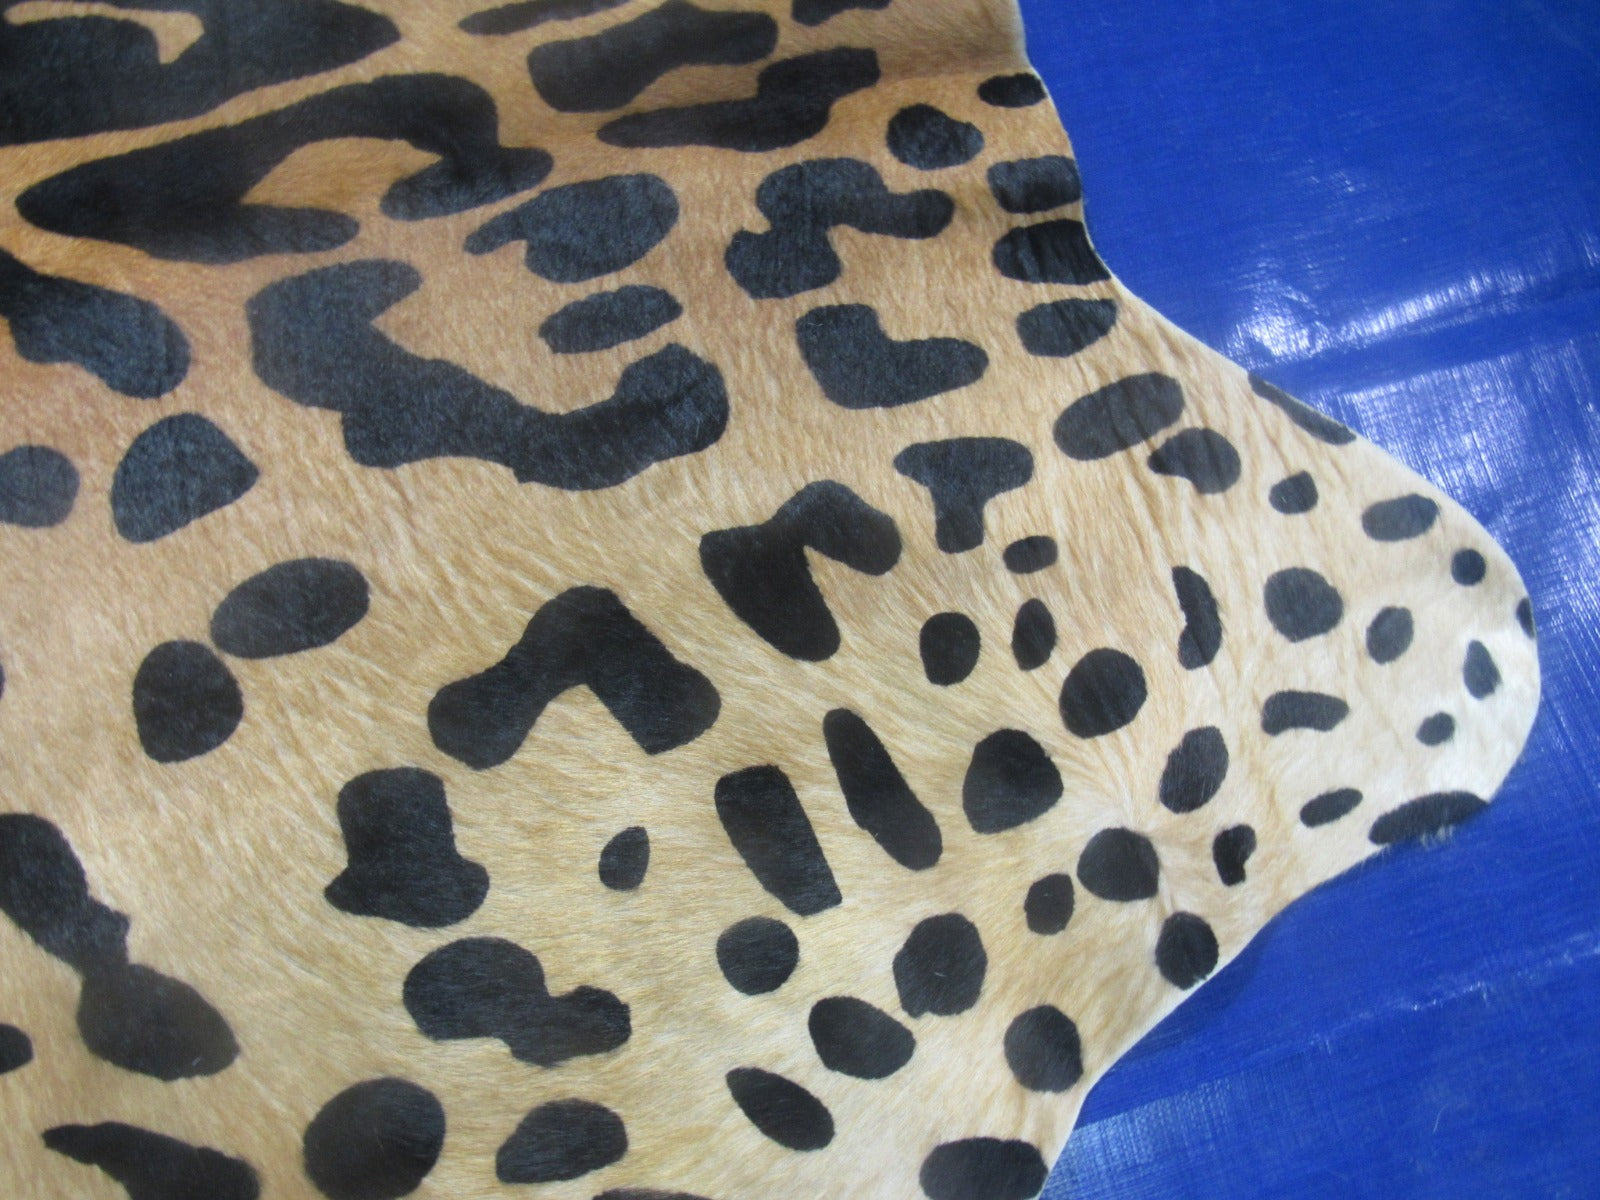 Jaguar Print Cowhide Rug - Size: 7x6 feet K-258